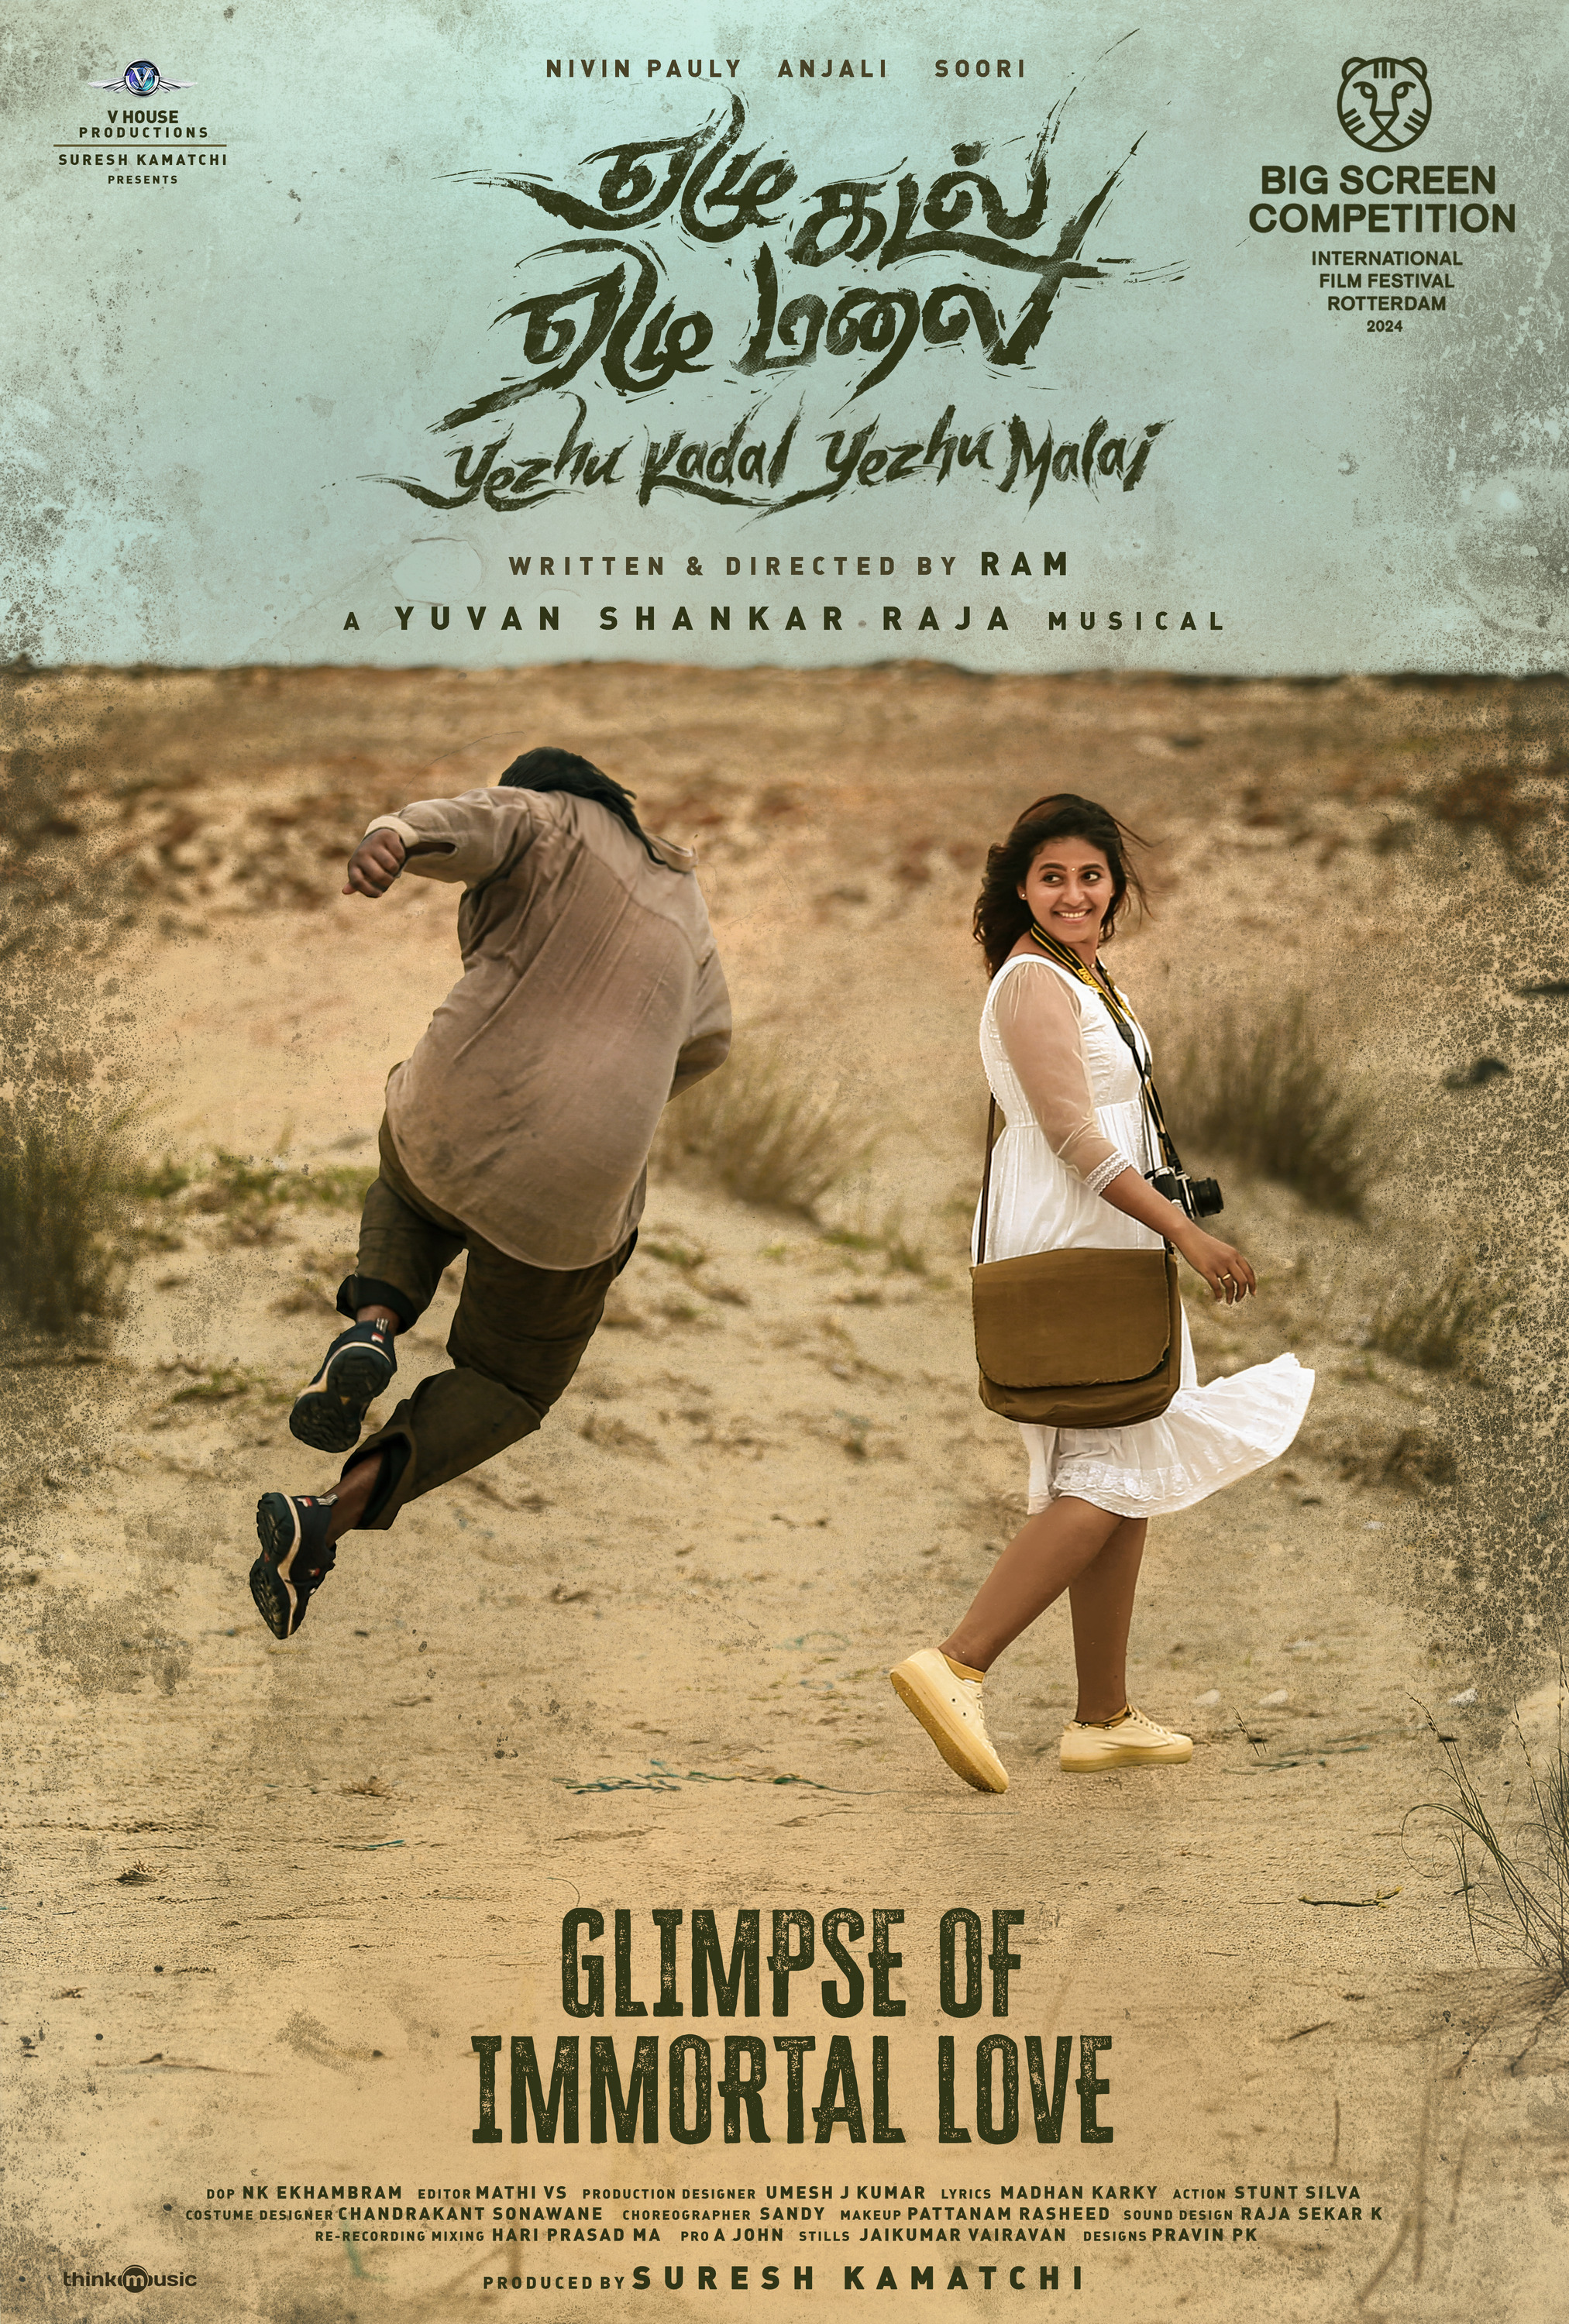 Mega Sized Movie Poster Image for Yezhu Kadal Yezhu Malai (#11 of 15)